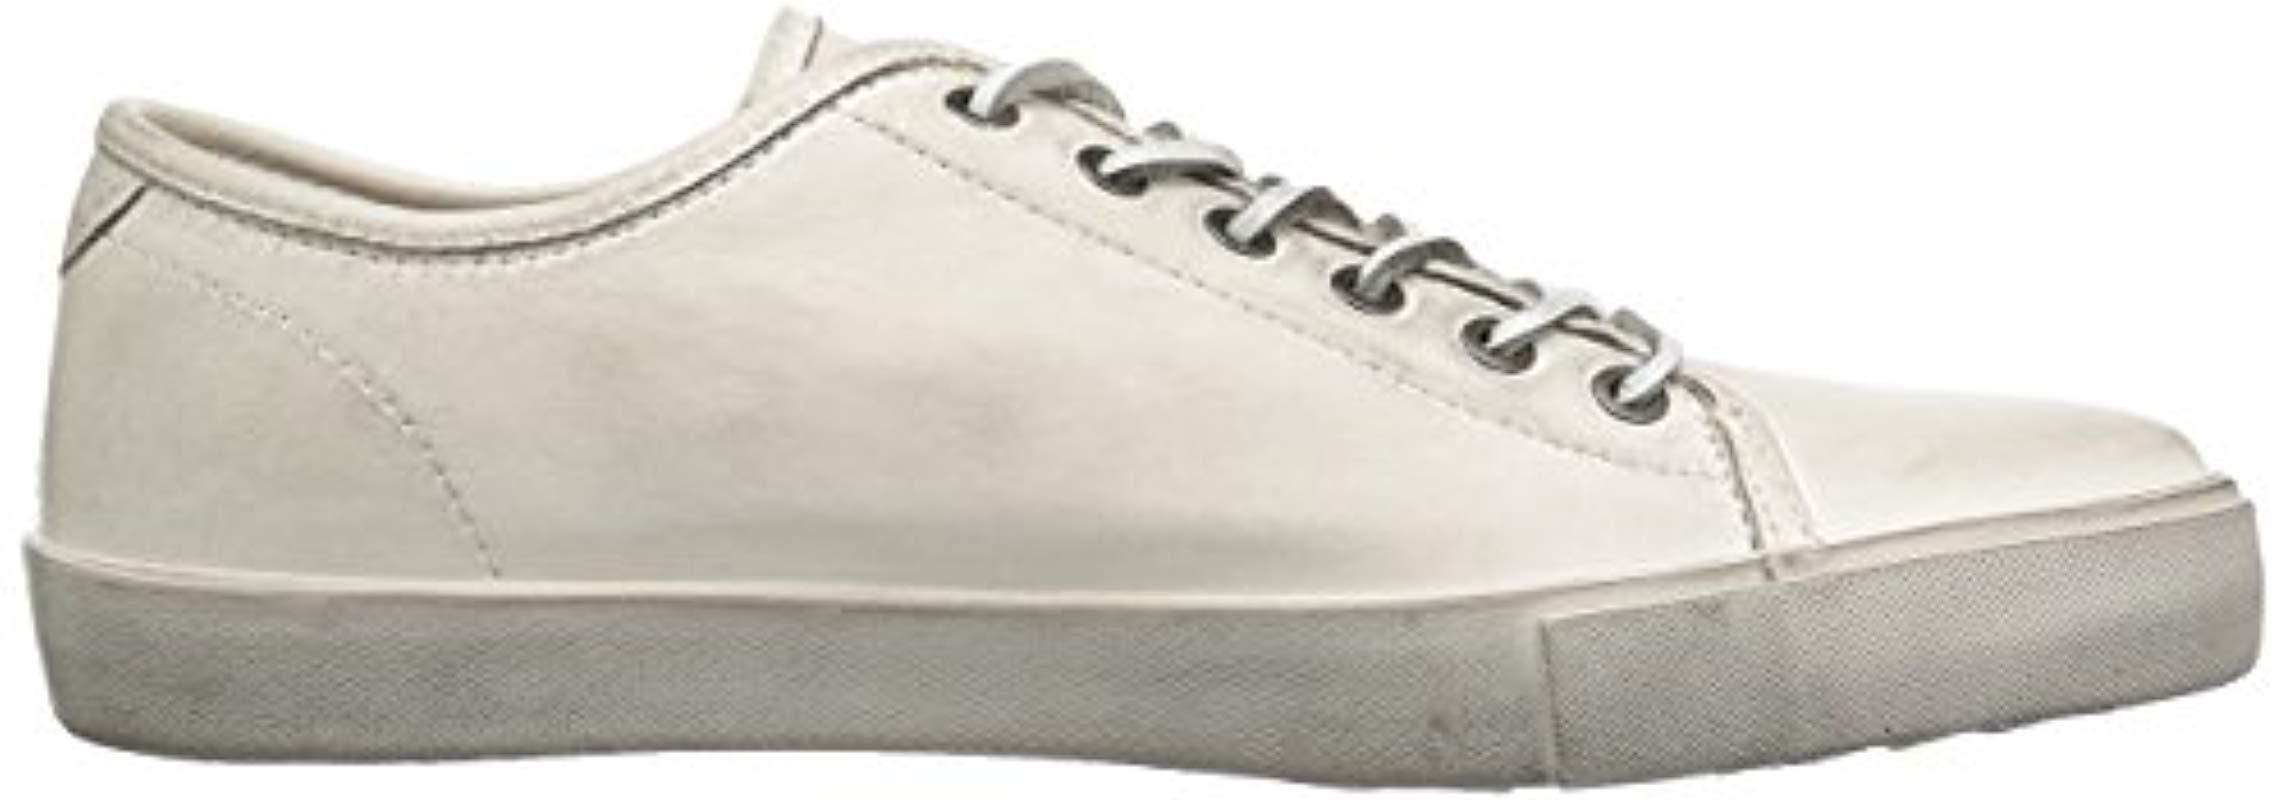 frye white tennis shoes